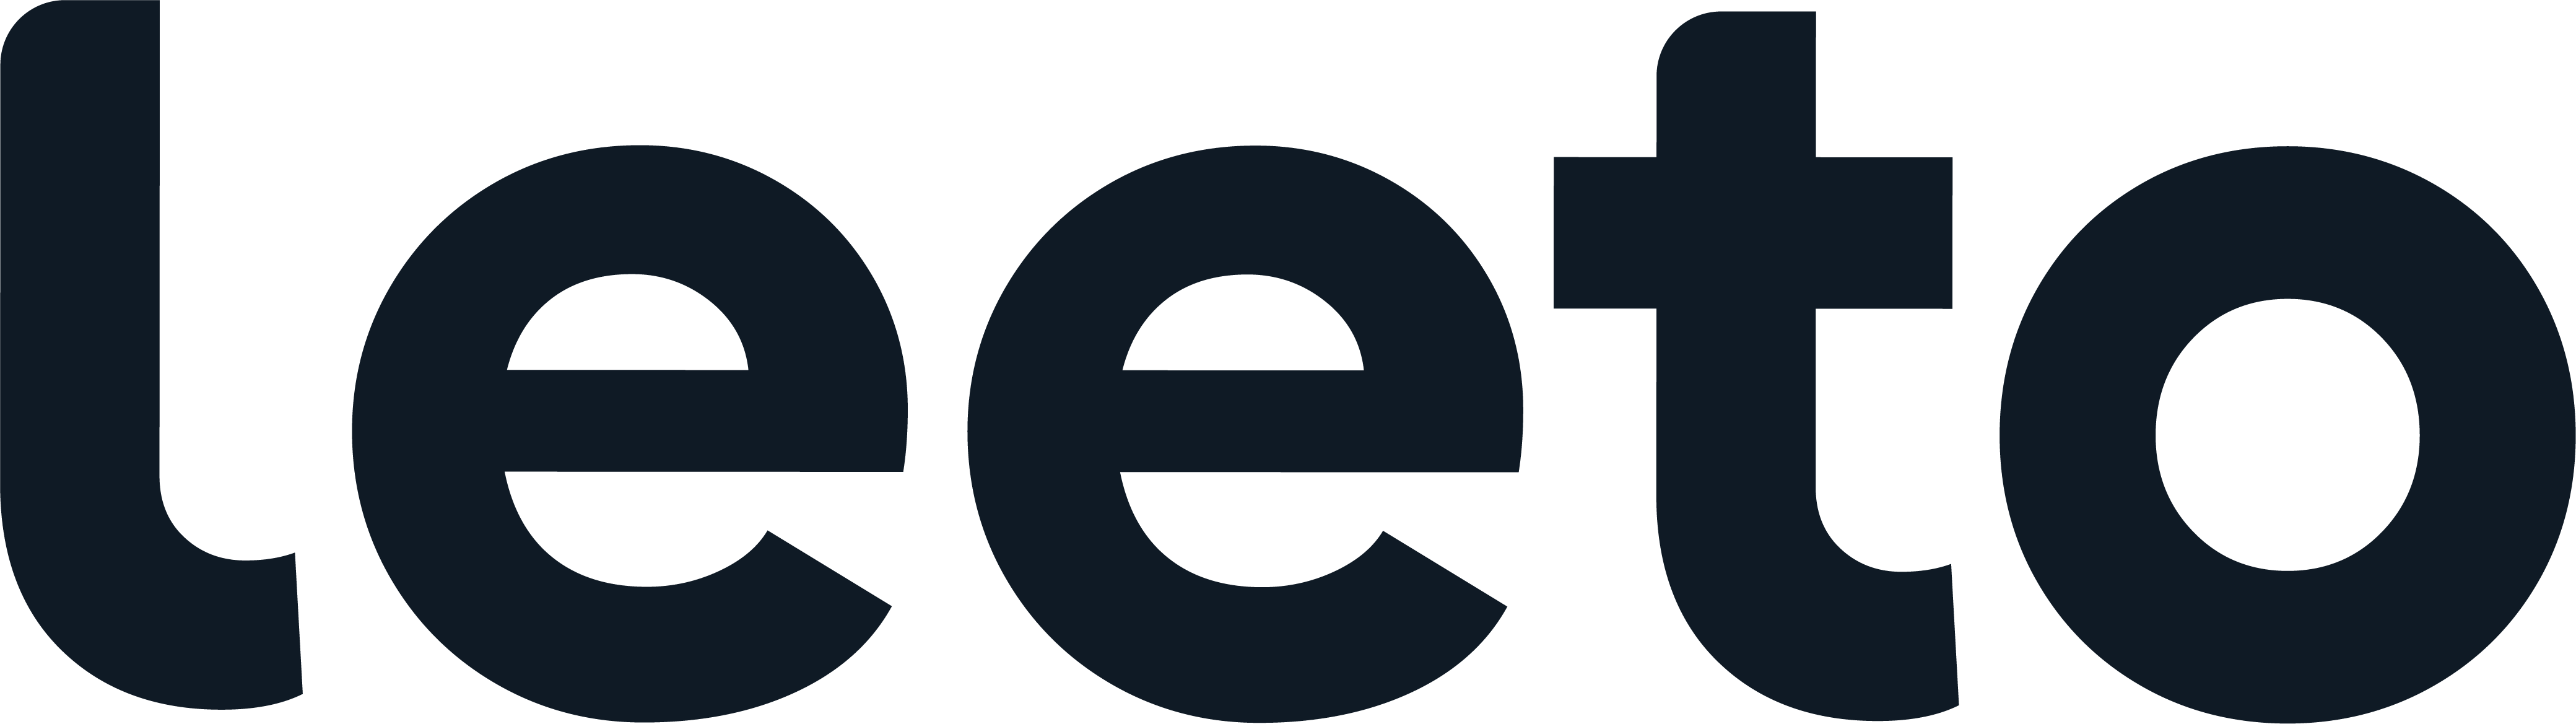 Leeto logo